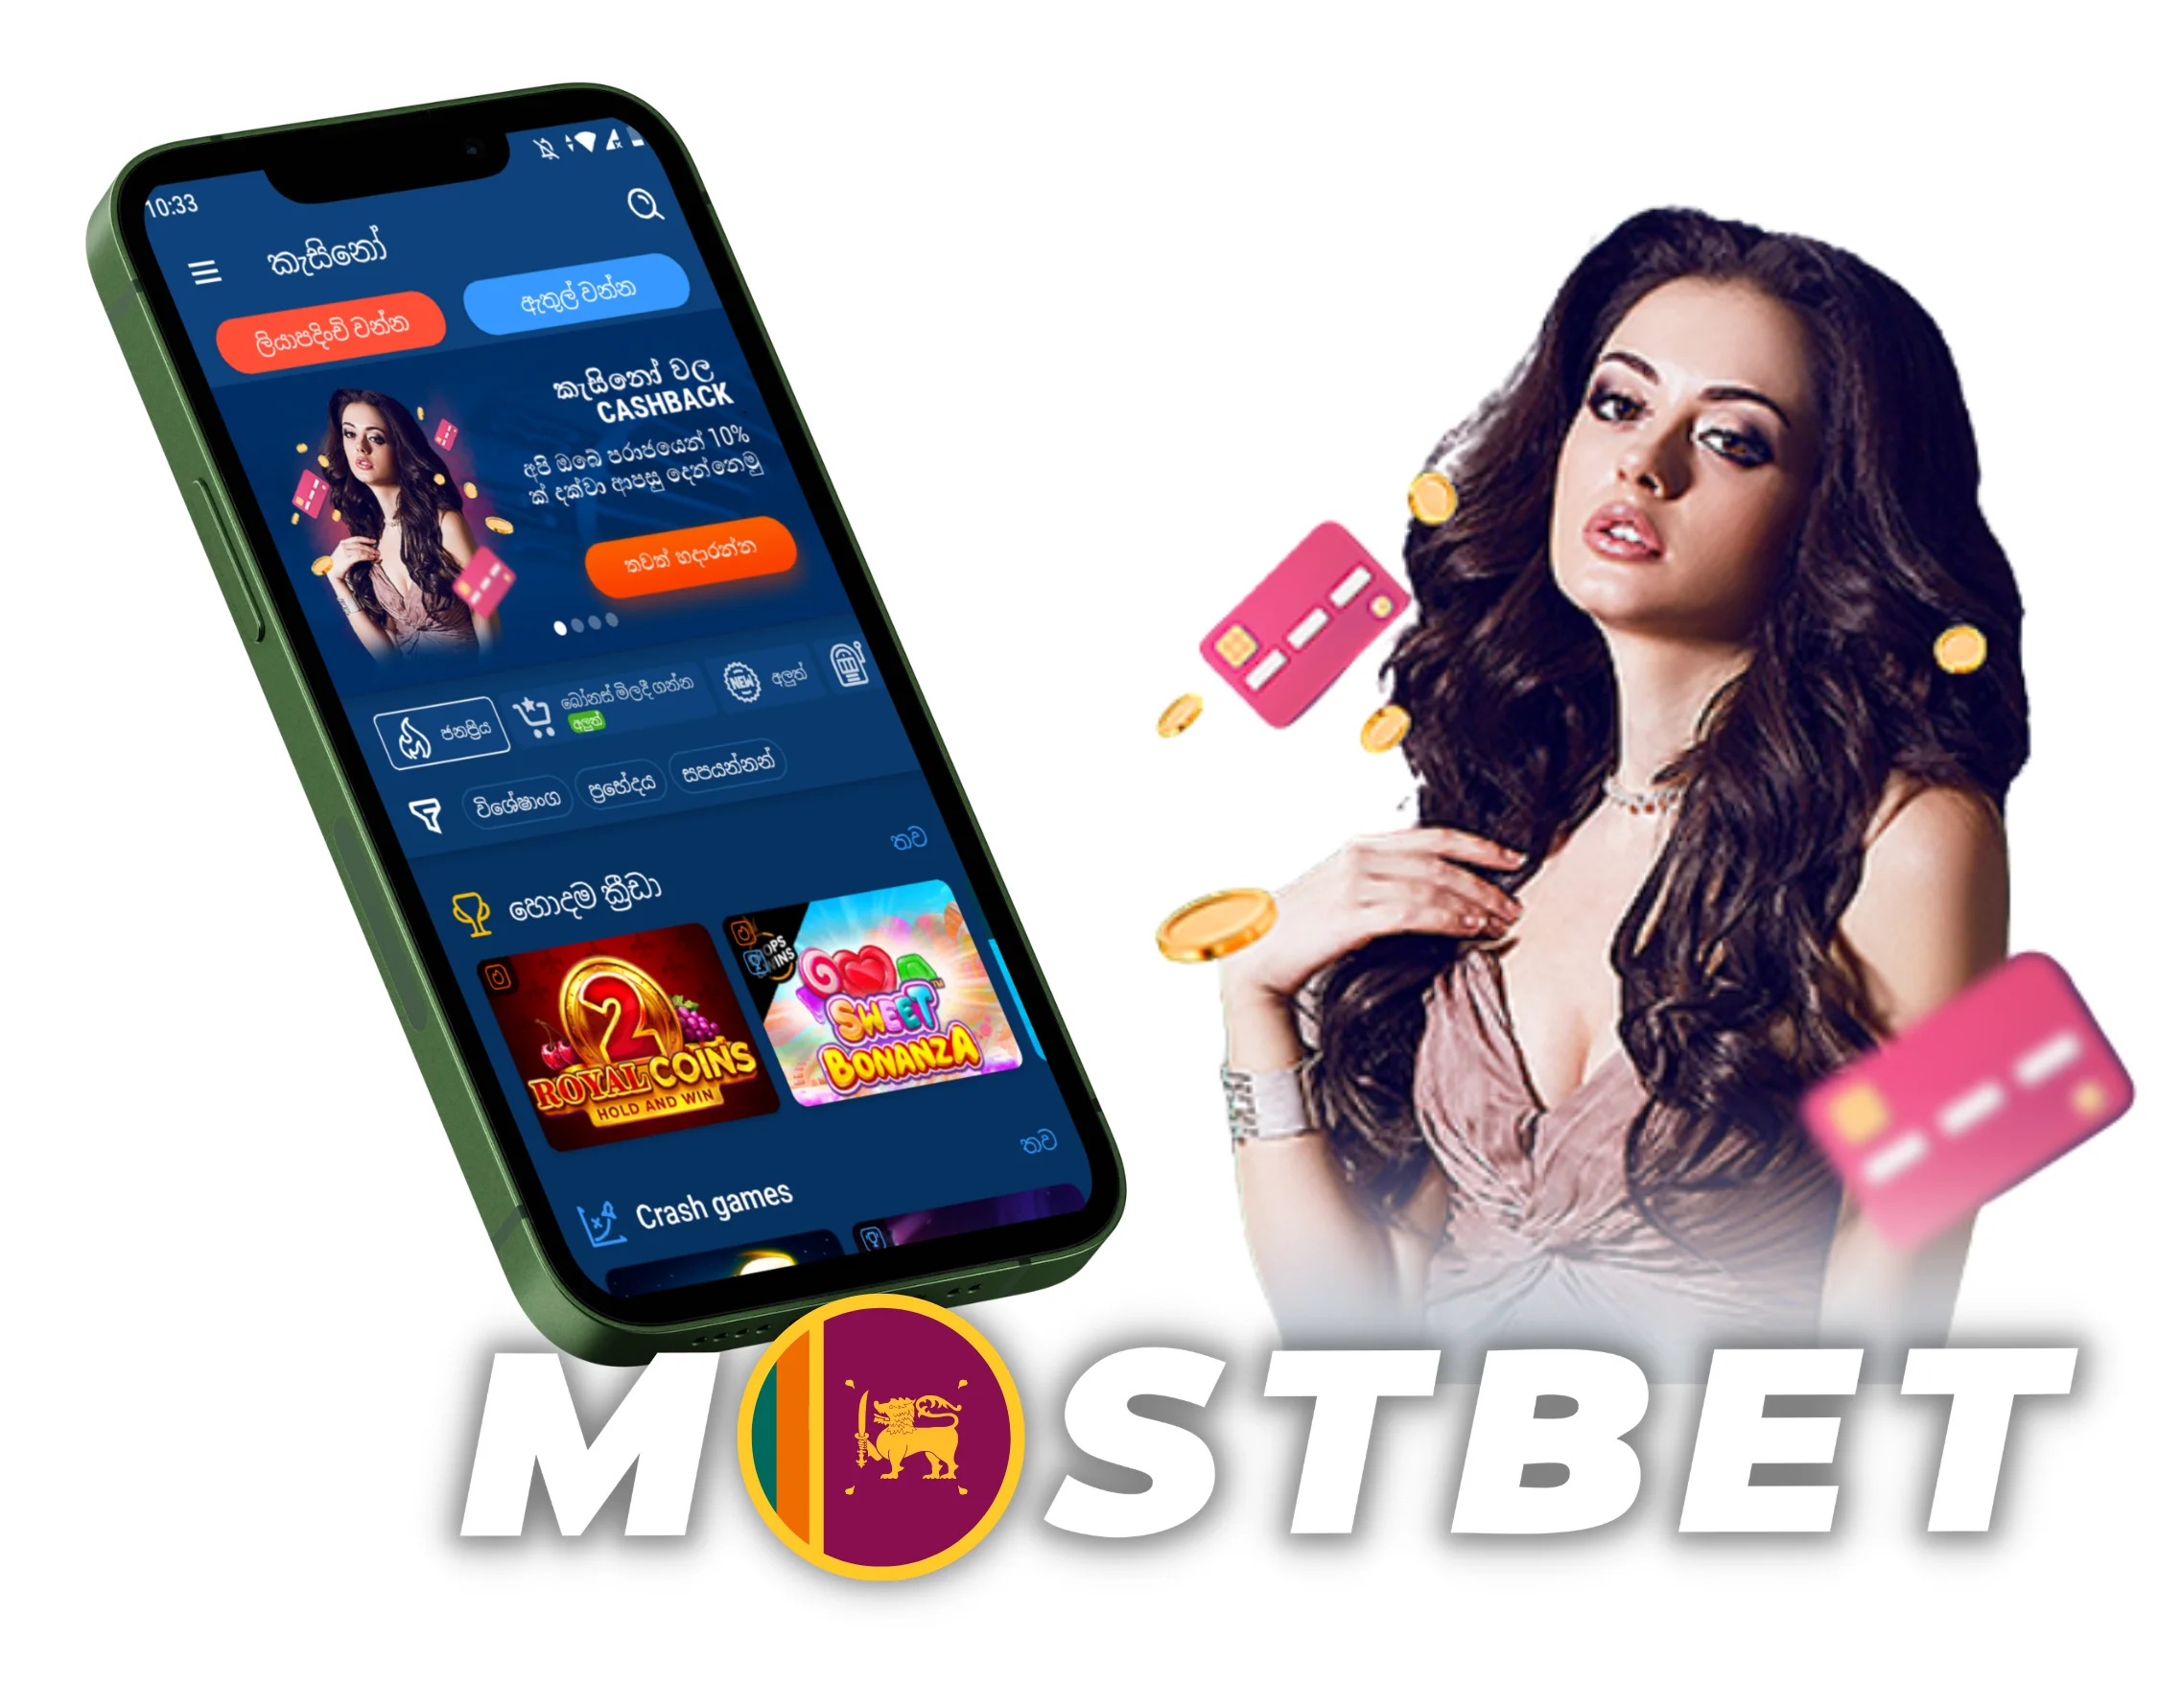 Mostbet Mobile Anwendung in Deutschland - herunterladen und spielen Cheet Sheet